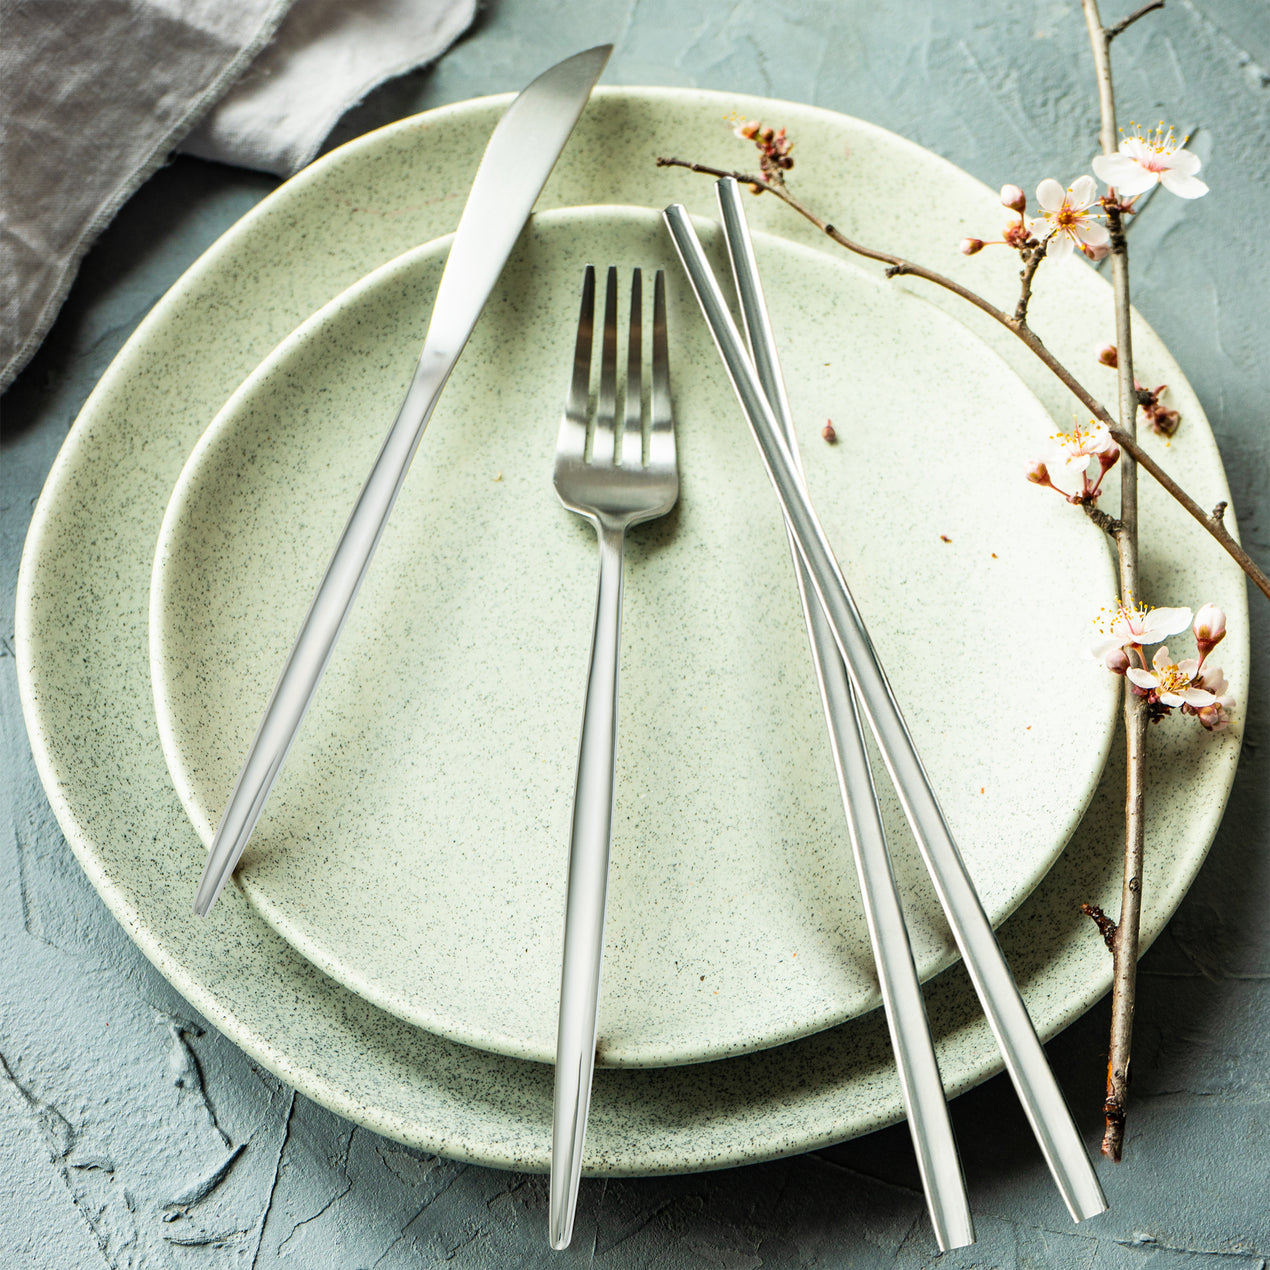 Oneida Easton Set Of 4 Dinner Forks